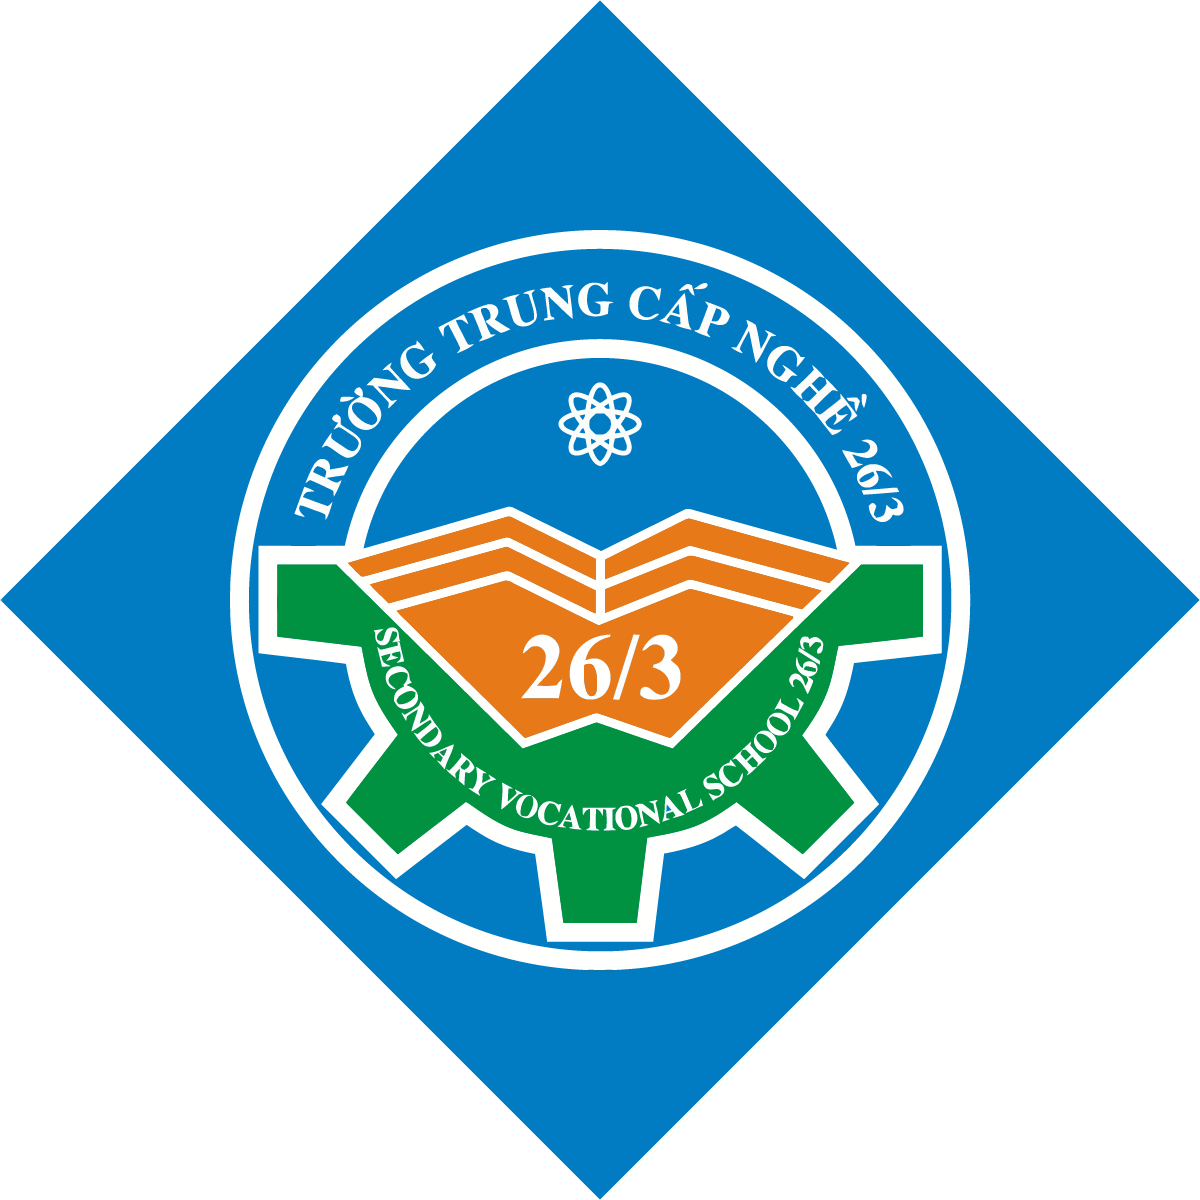 Logo Truong Trung Cap Nghe 263